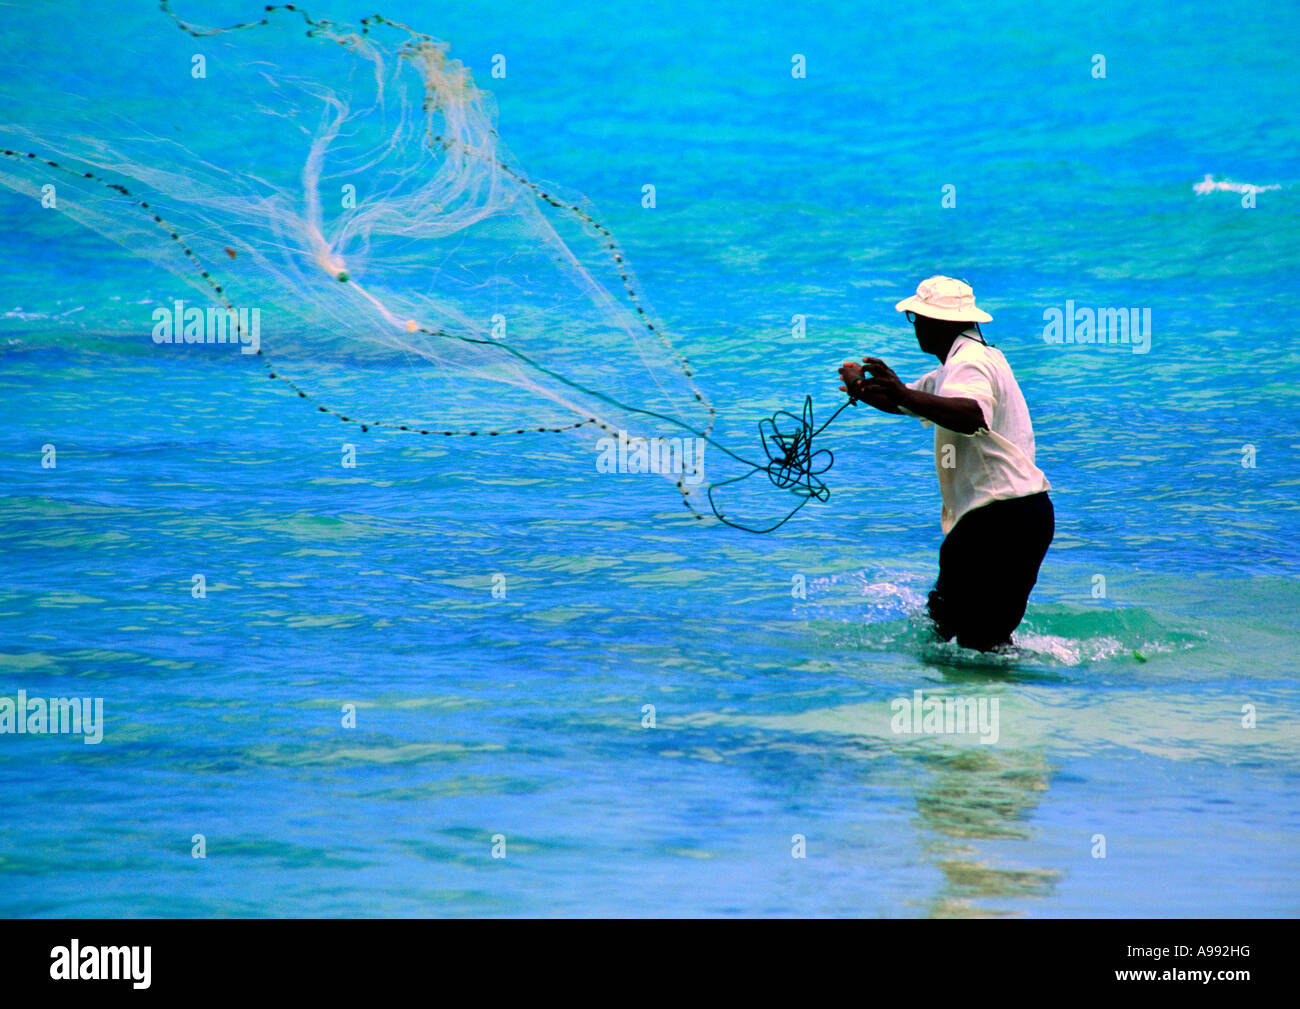 https://c8.alamy.com/comp/A992HG/barbados-fisherman-throwing-a-cast-net-A992HG.jpg